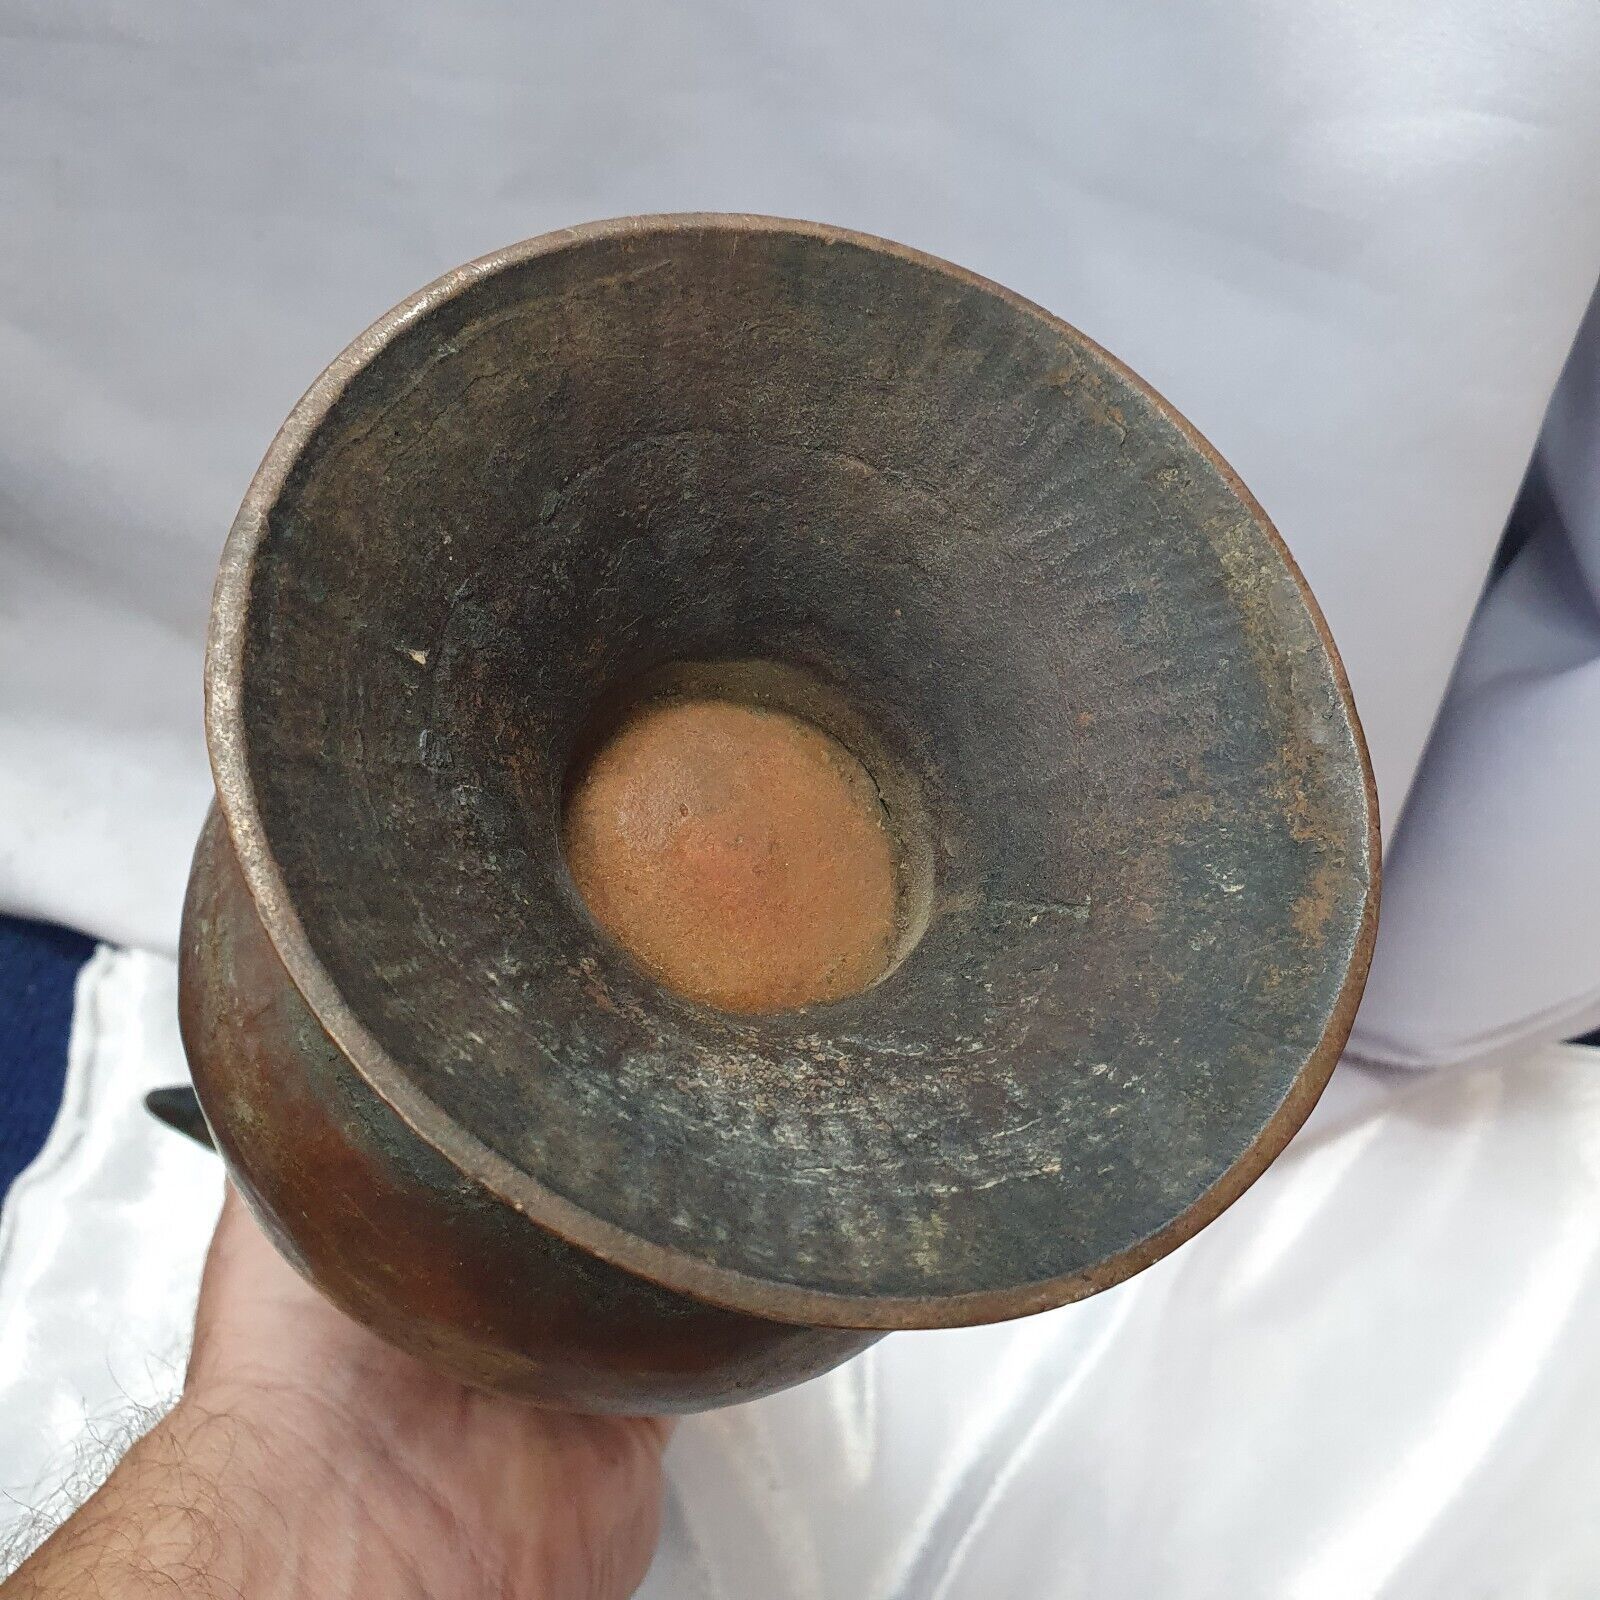 Antike Bronze-Kupferkanne aus dem 19. Jh., handgeschnitzt, einzigartige Teekanne in Museumsqualität